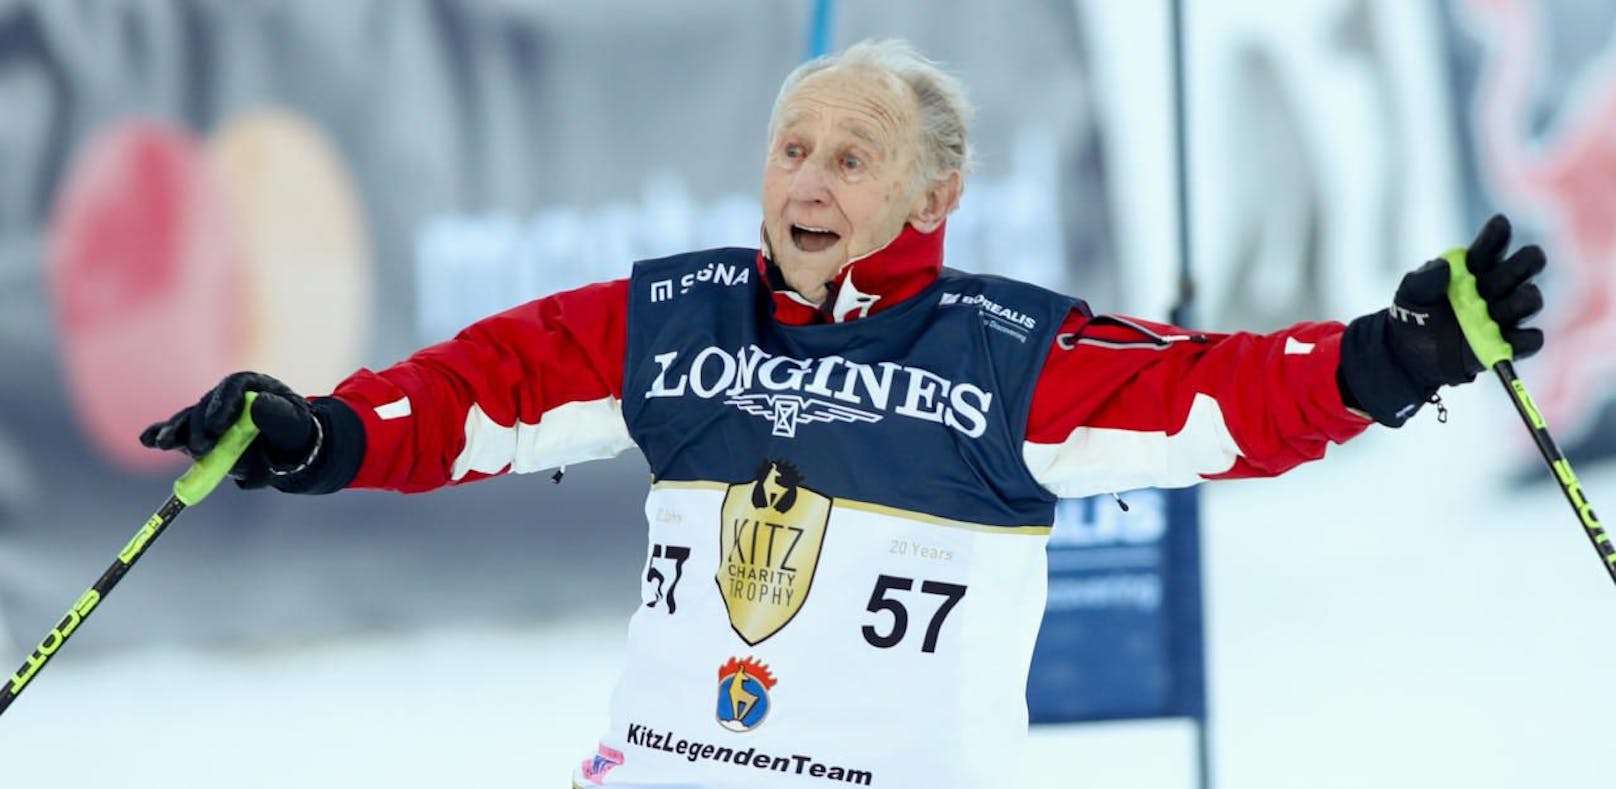 Anderl Molterer ist mit neun Erfolgen der Rekordsieger in Kitzbühel. In den 1960er-Jahren wanderte der heute 88-Jährige in die USA aus. 